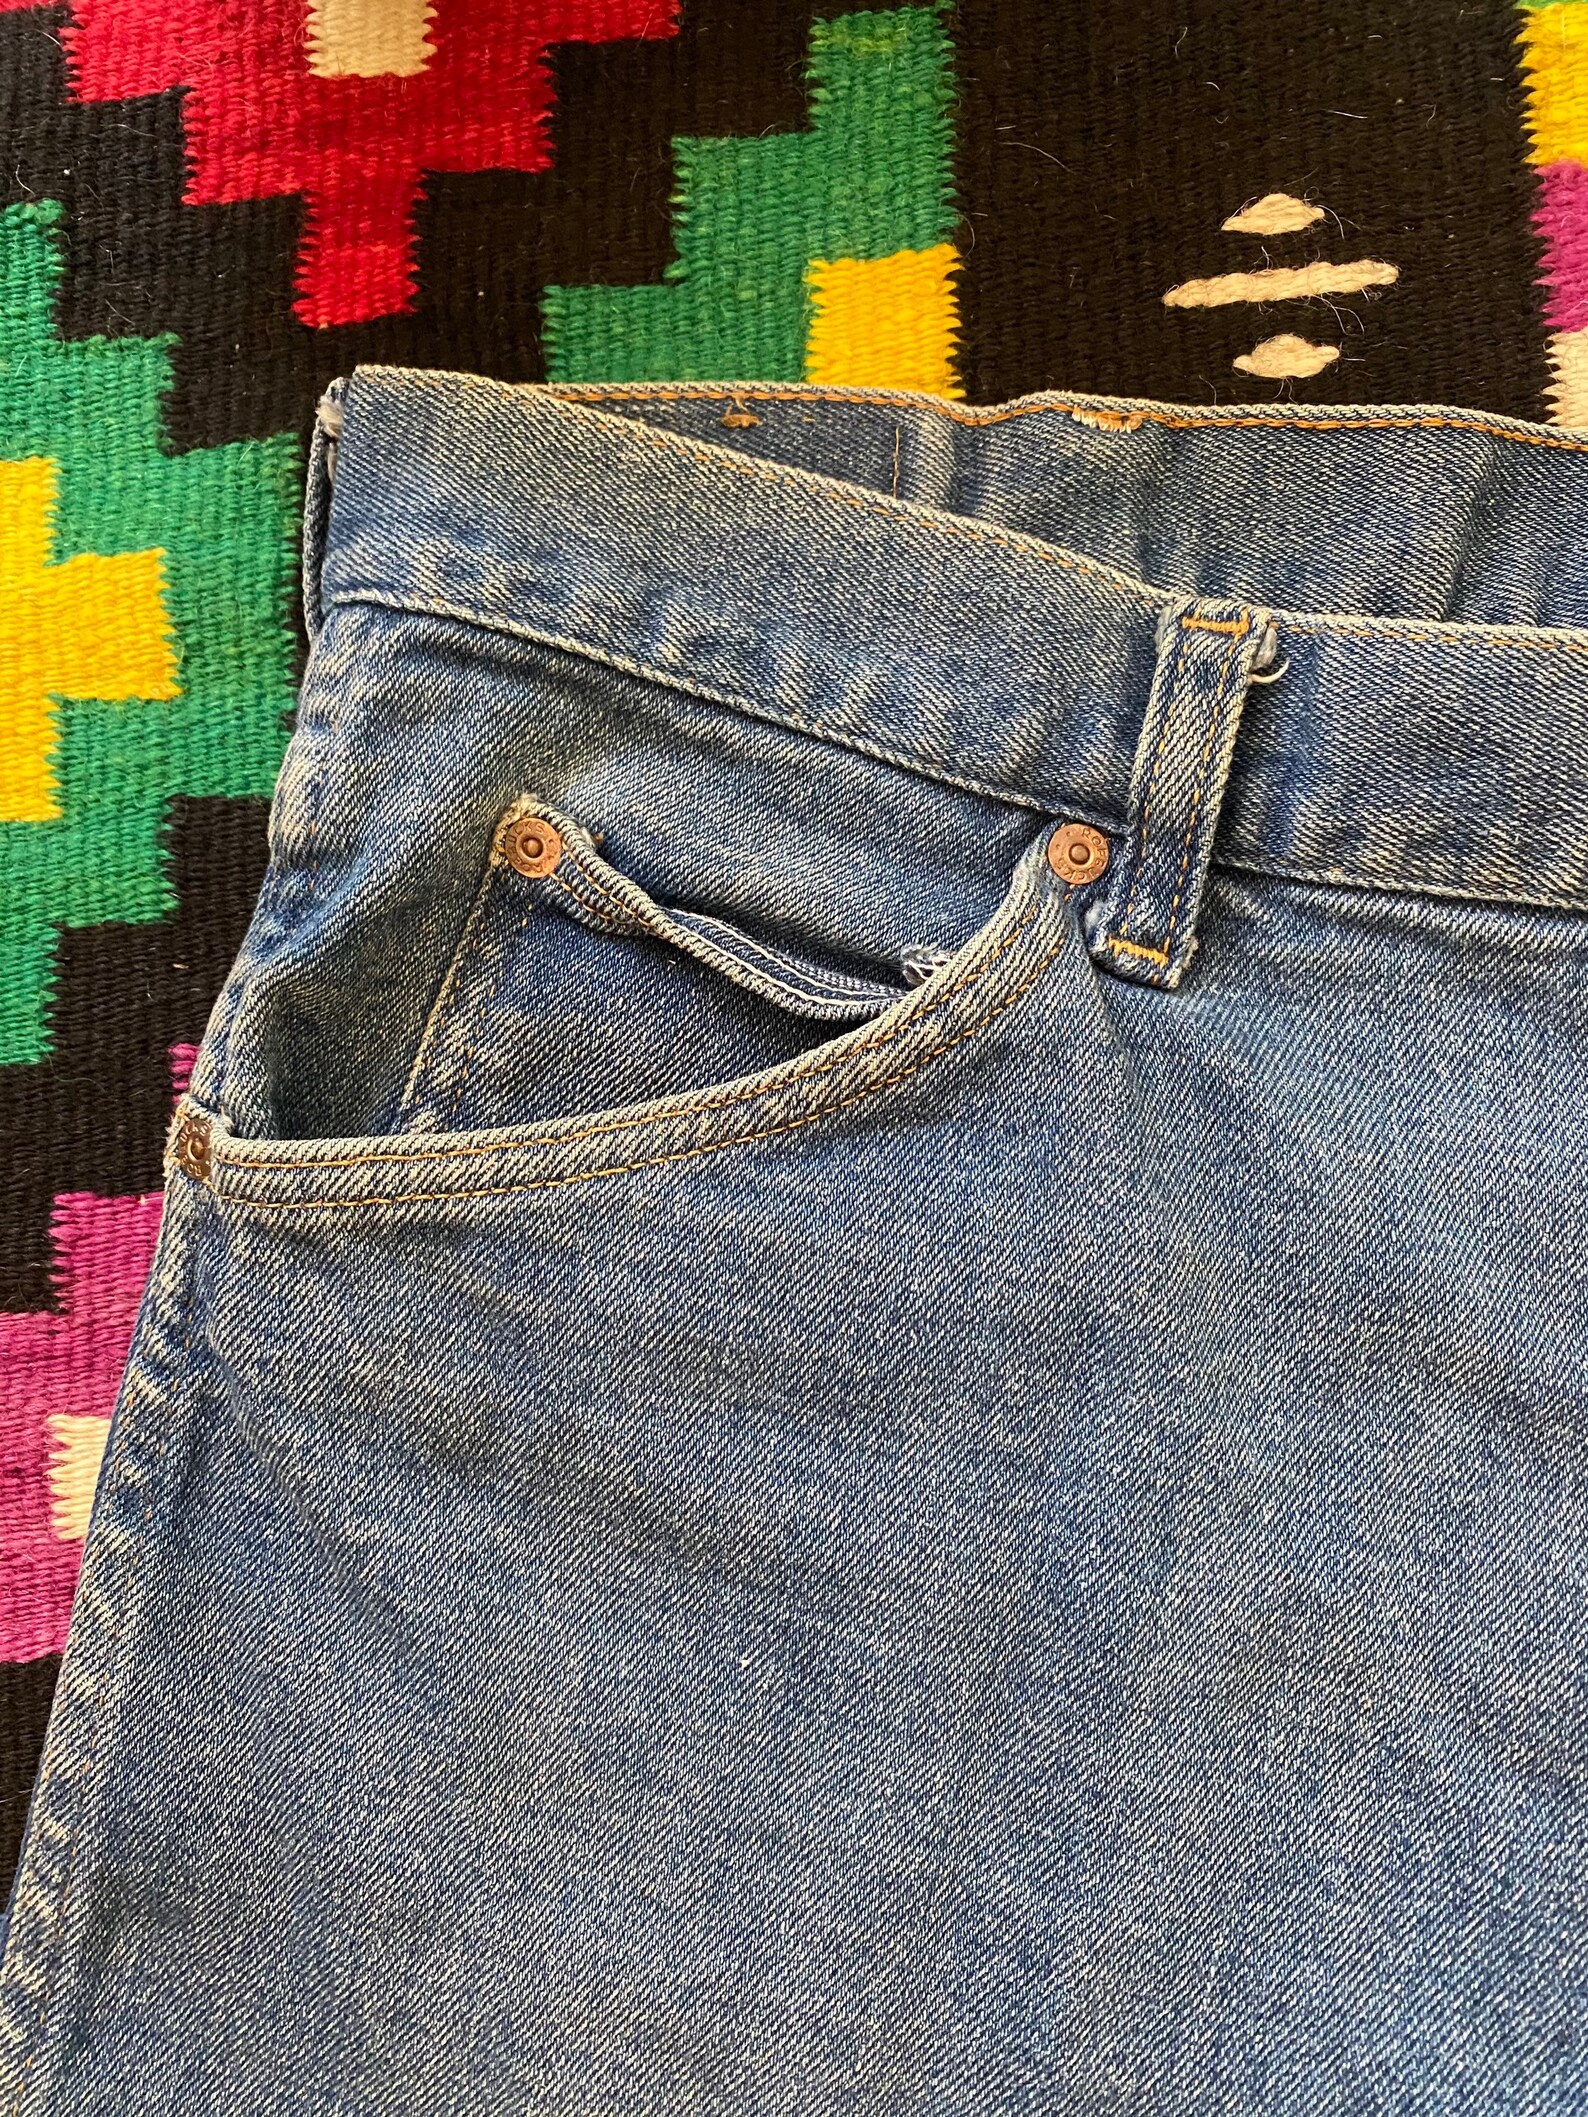 70s Vintage Roebucks Cut off Shorts XL - Etsy